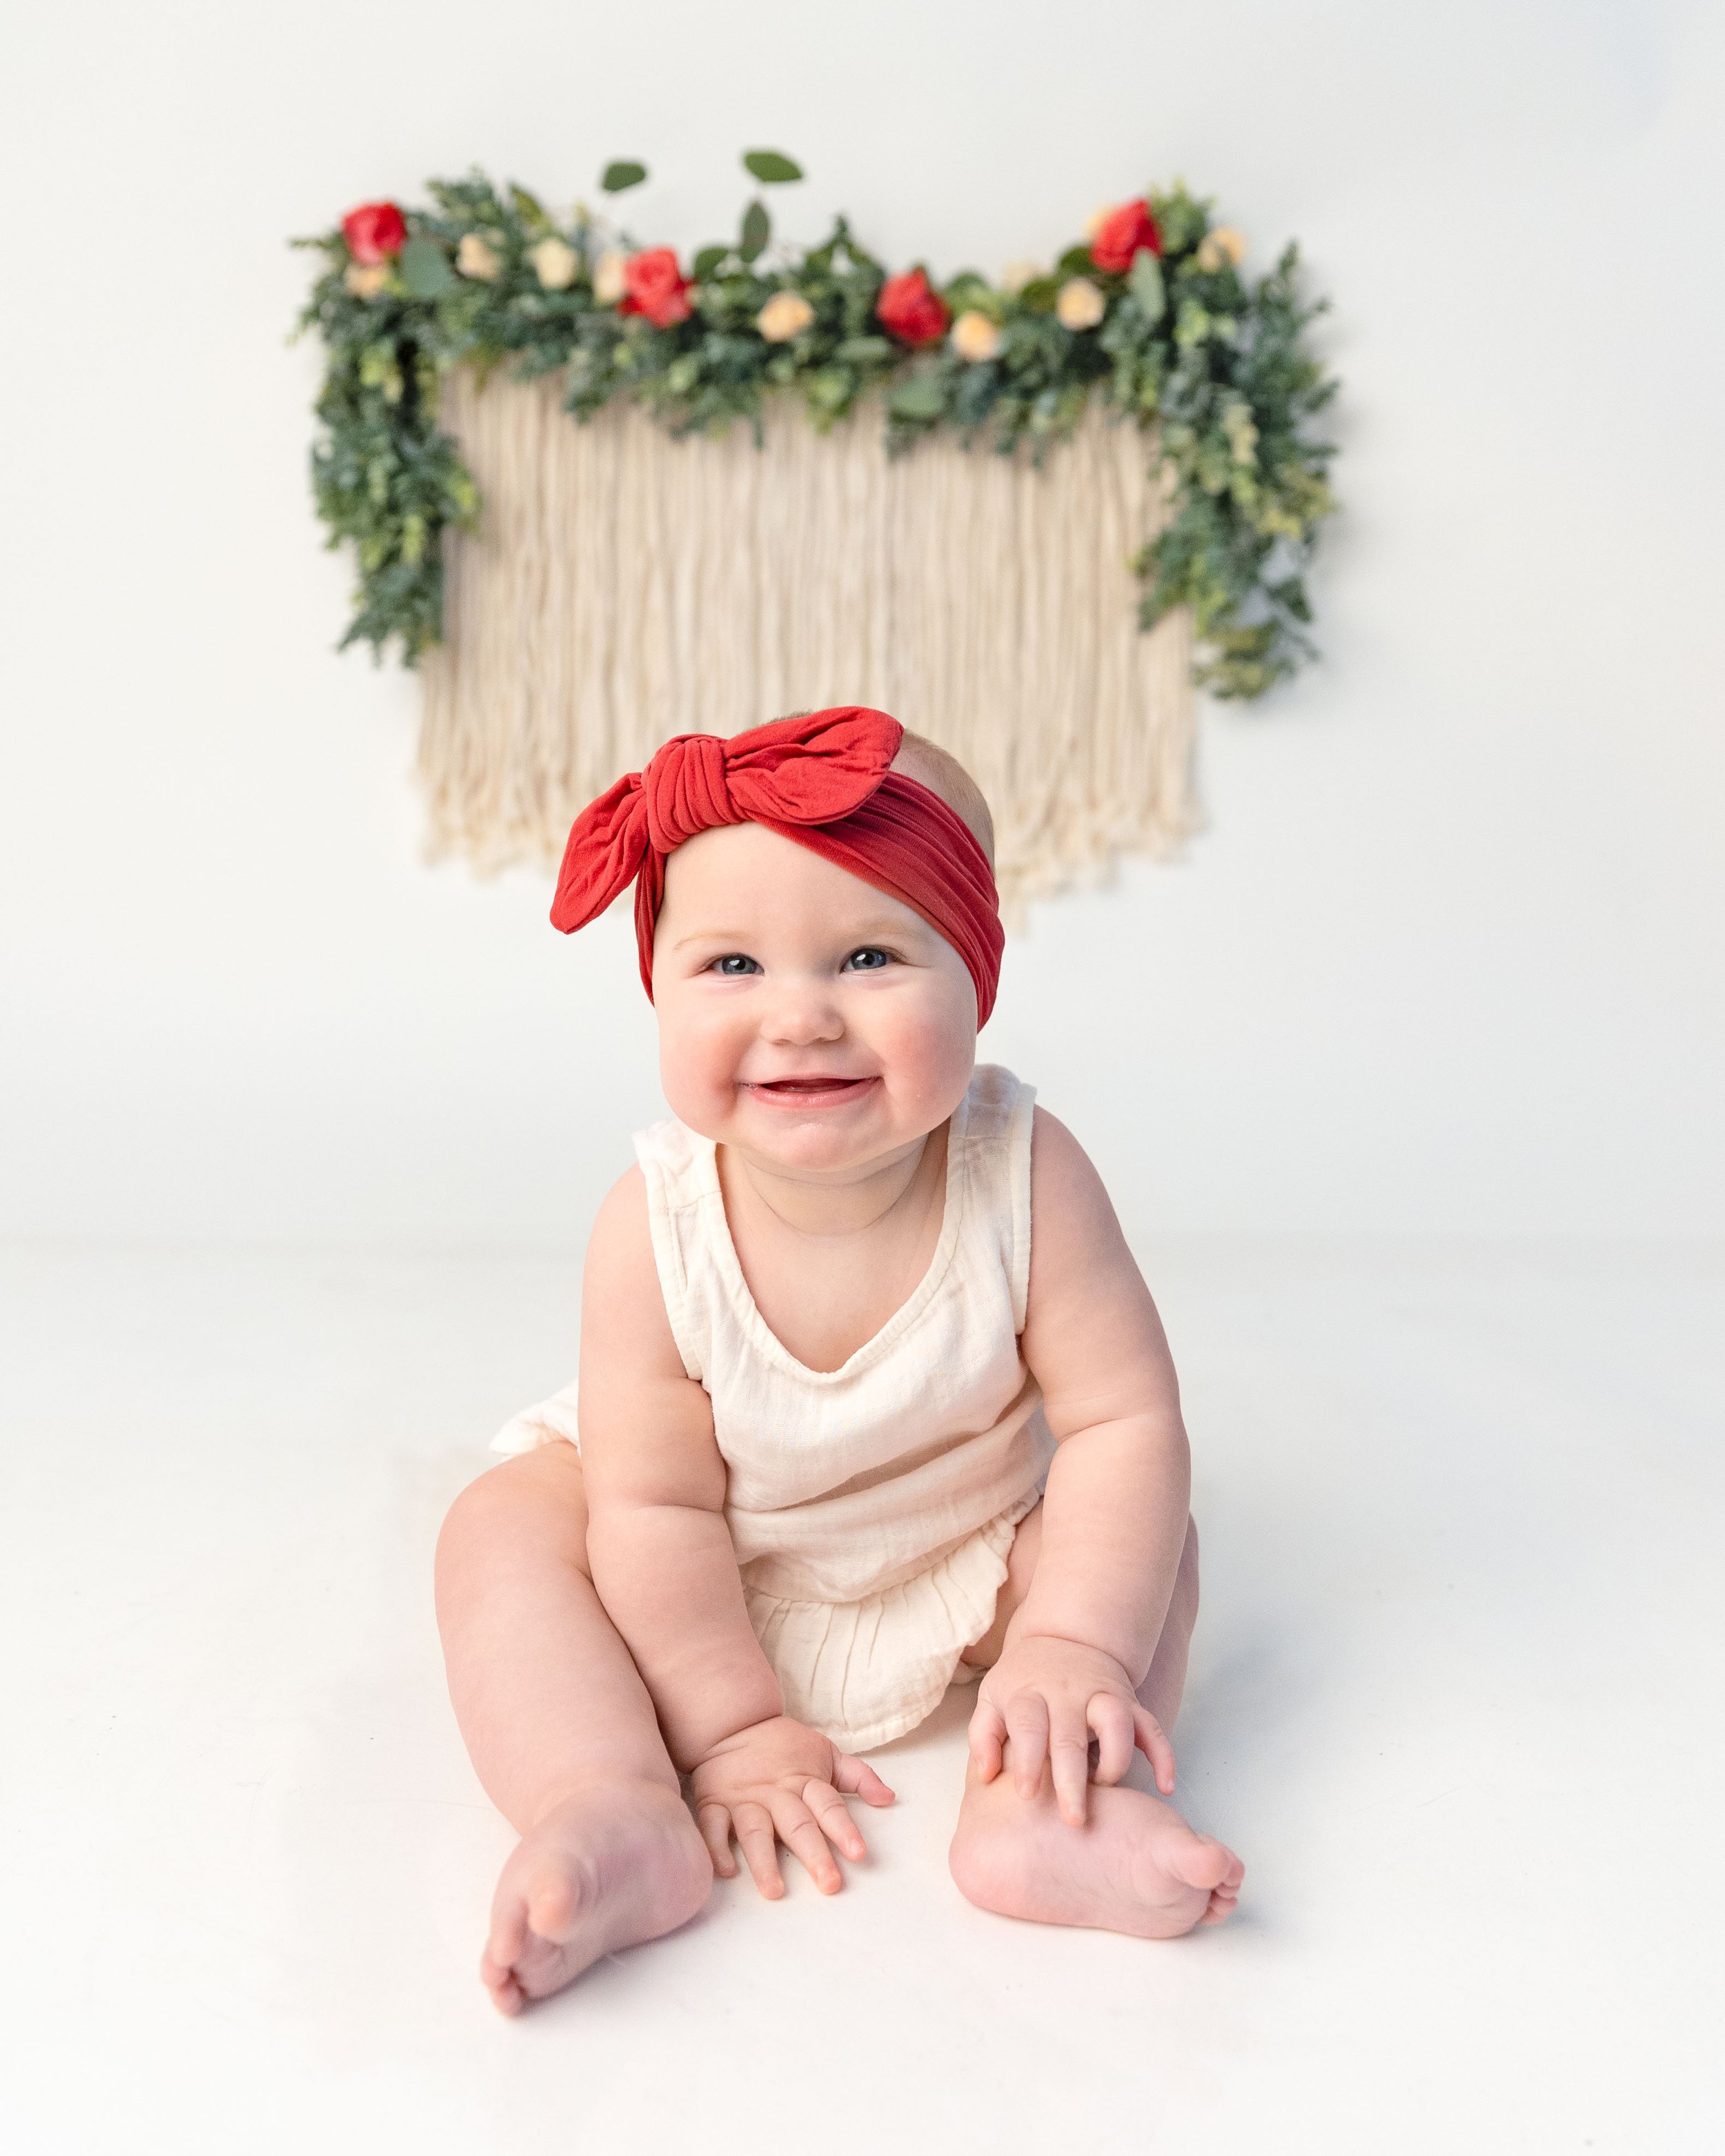 baby-girl-milk-bath-flowers-milestone-photography-newborn-photographer-spokane-washington-3.jpg